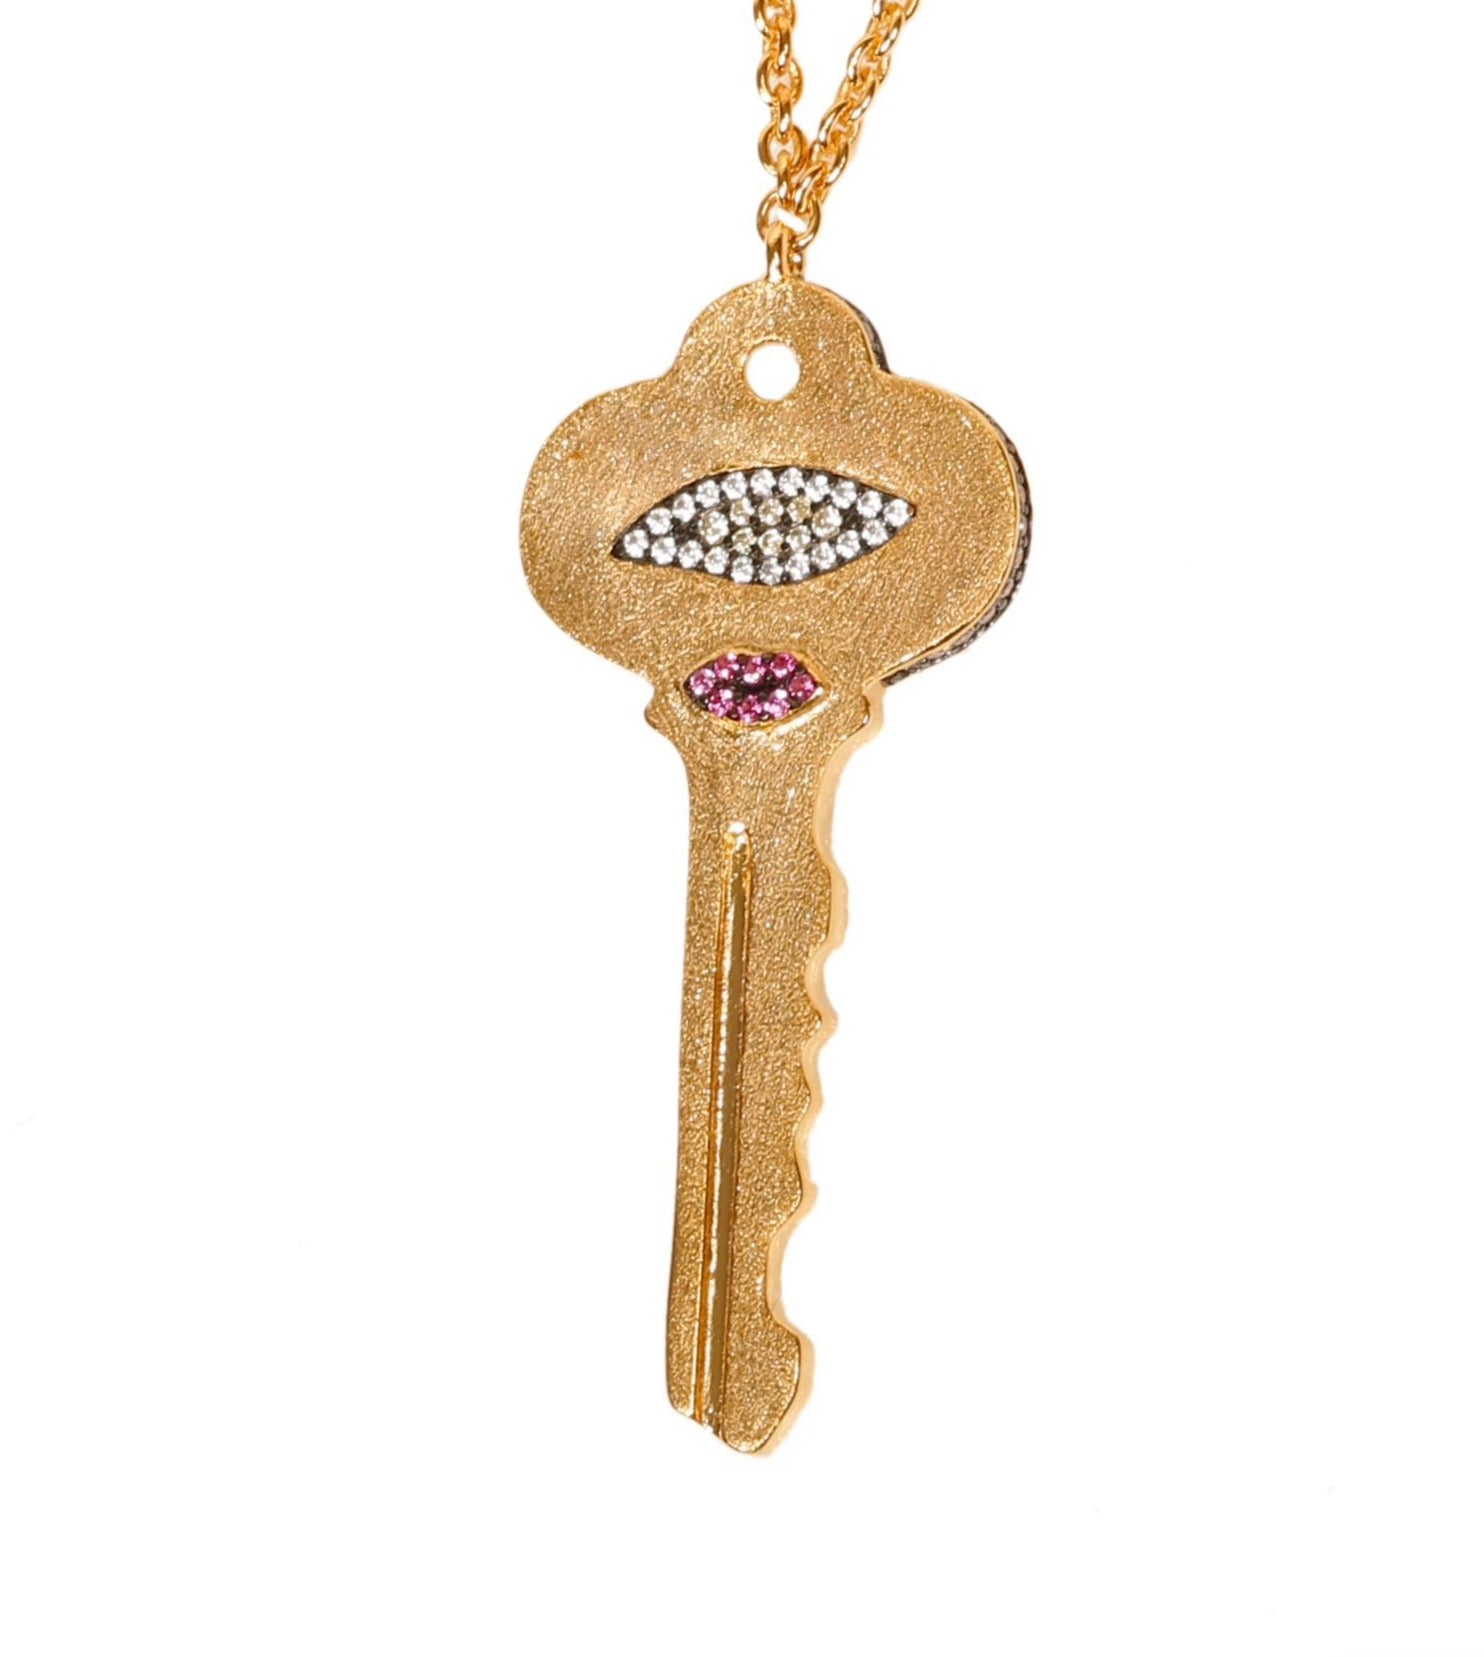 The Key Necklace - Gold Vermeil